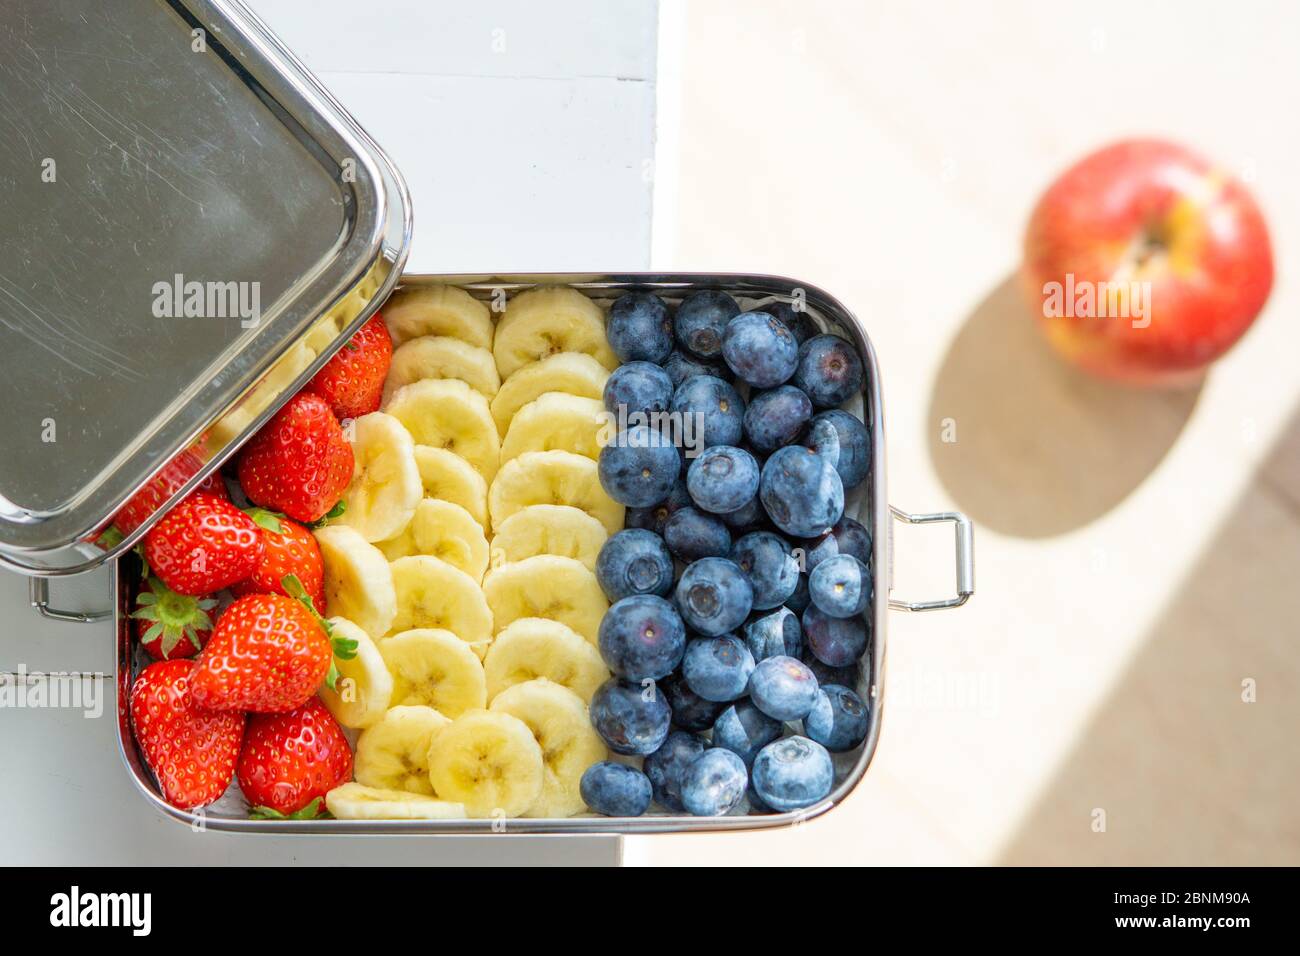 En-cas bleuets, bananes et fraises dans un grand récipient en acier inoxydable. Boîte repas sans plastique isolée sur la table. Pomme rouge sur le fond. Zéro déchet, écologique. Banque D'Images